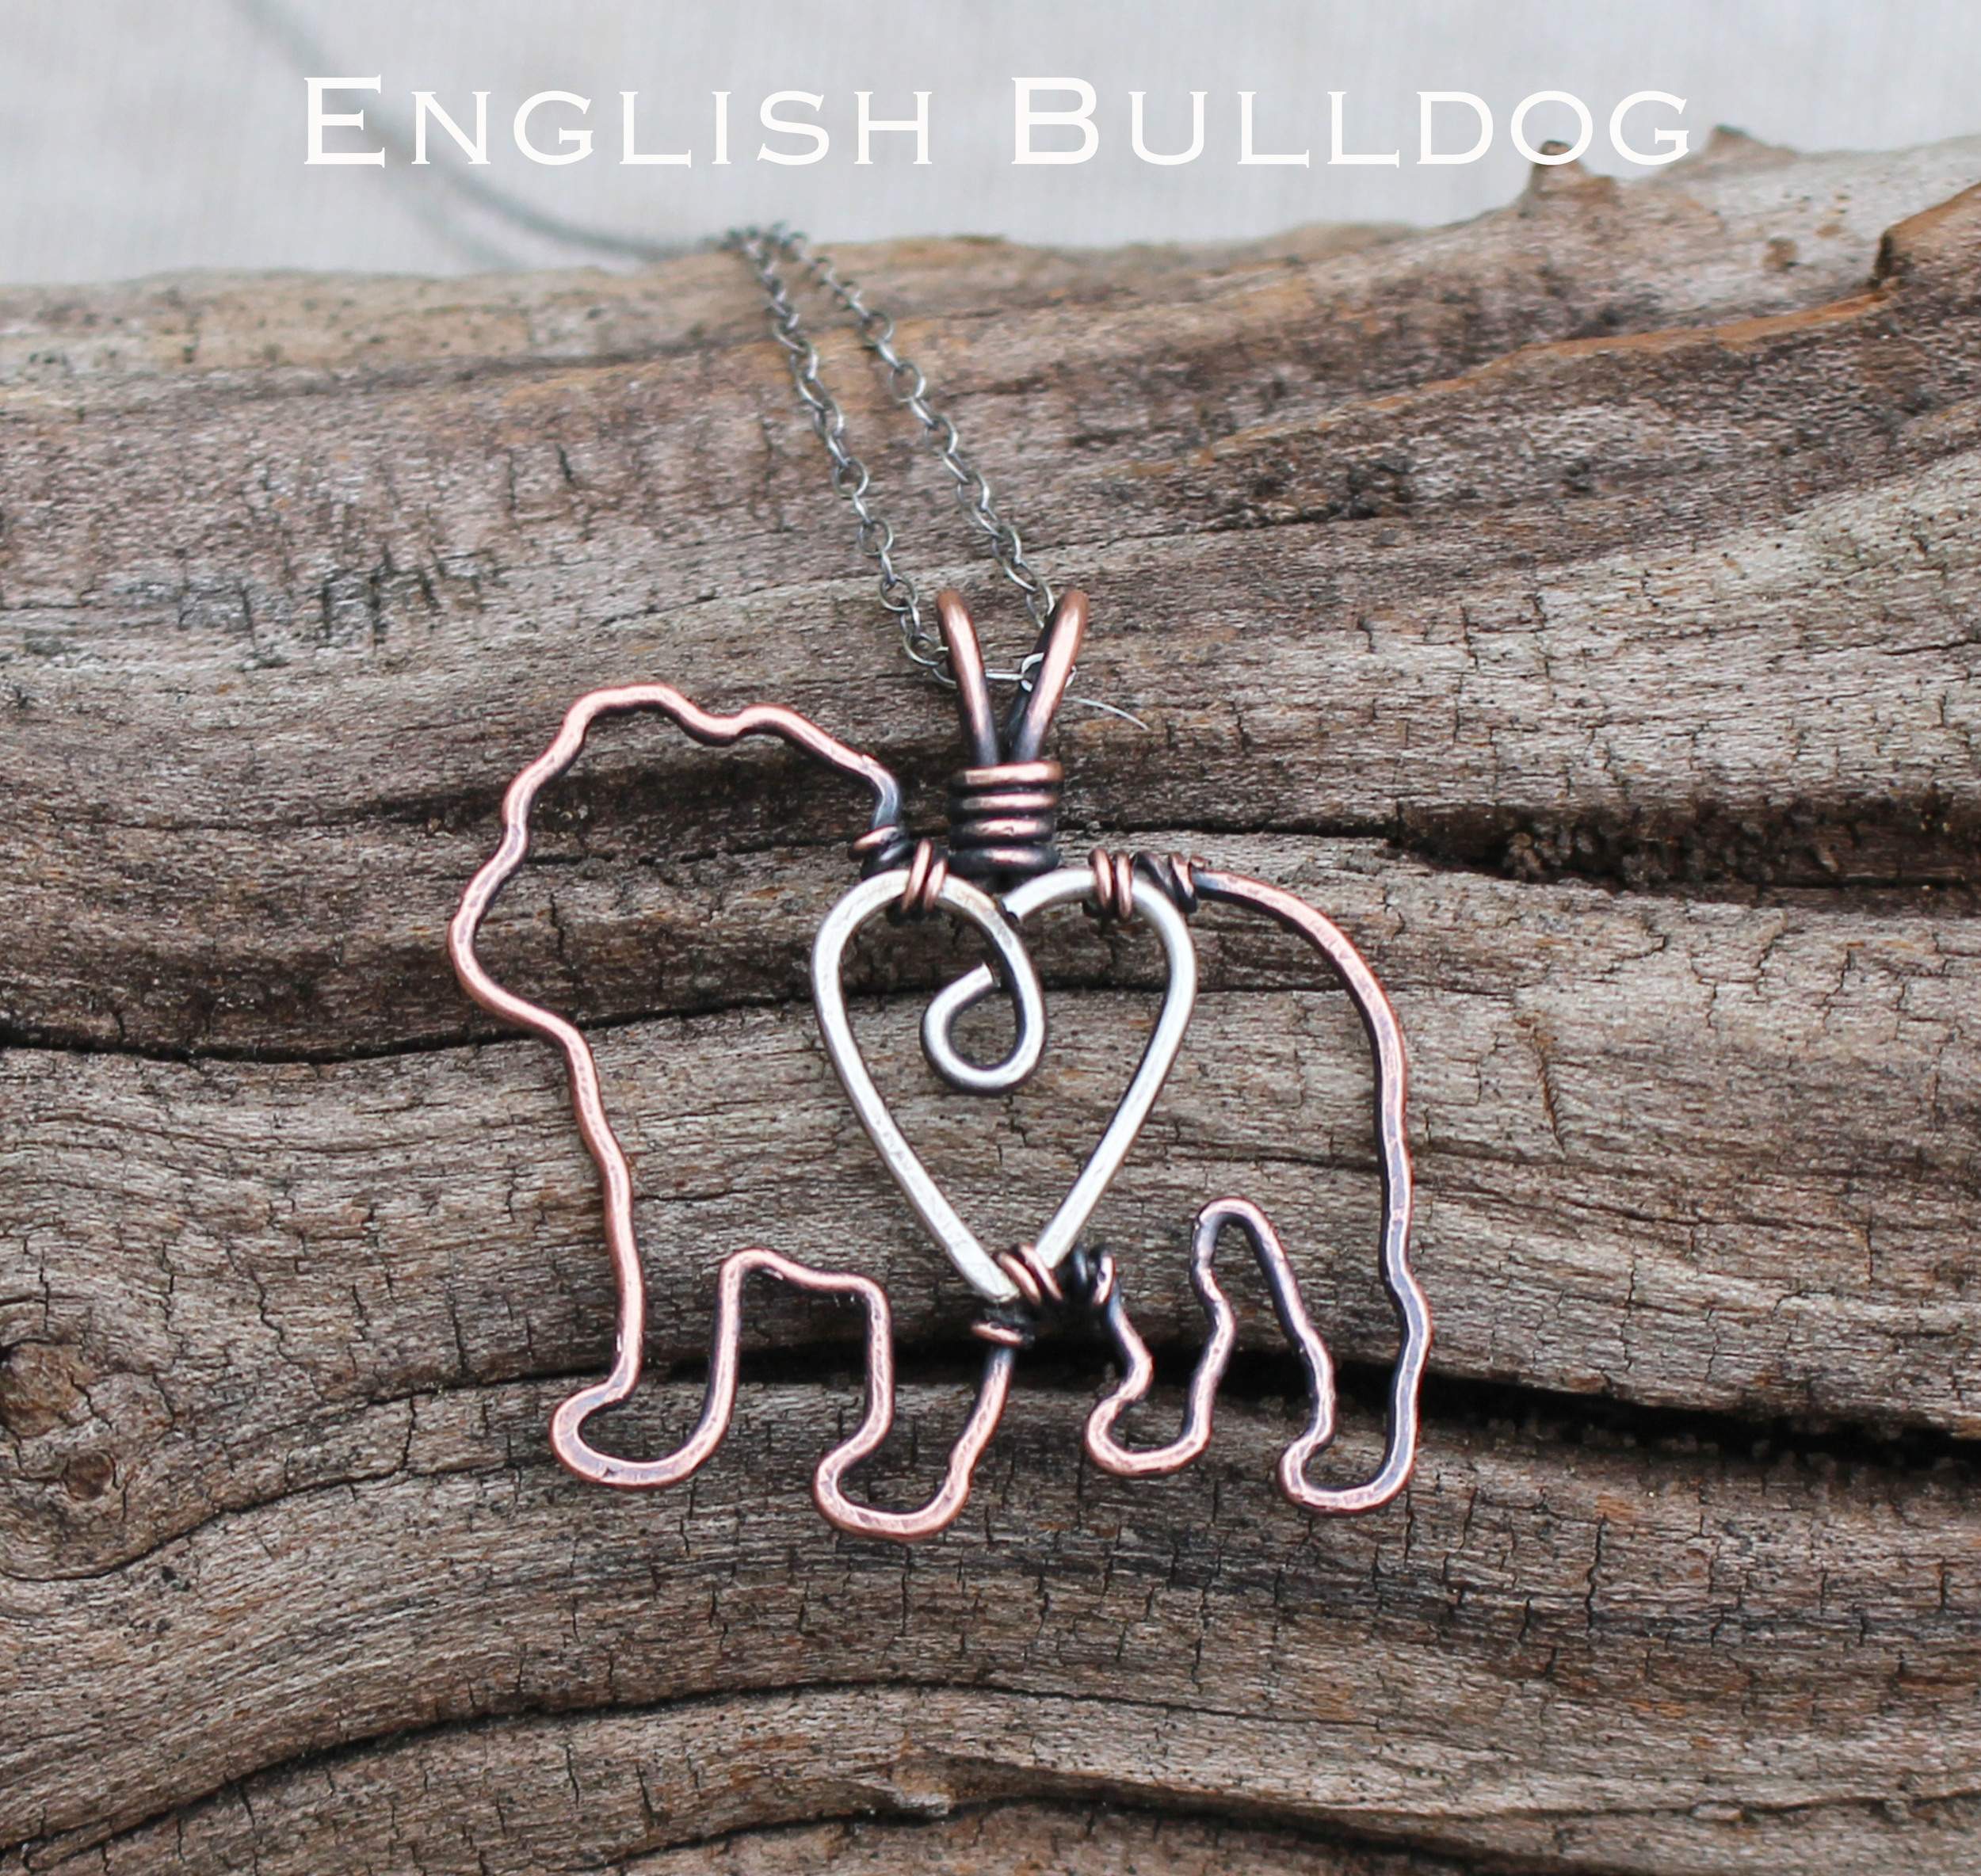 english bulldog2.jpg